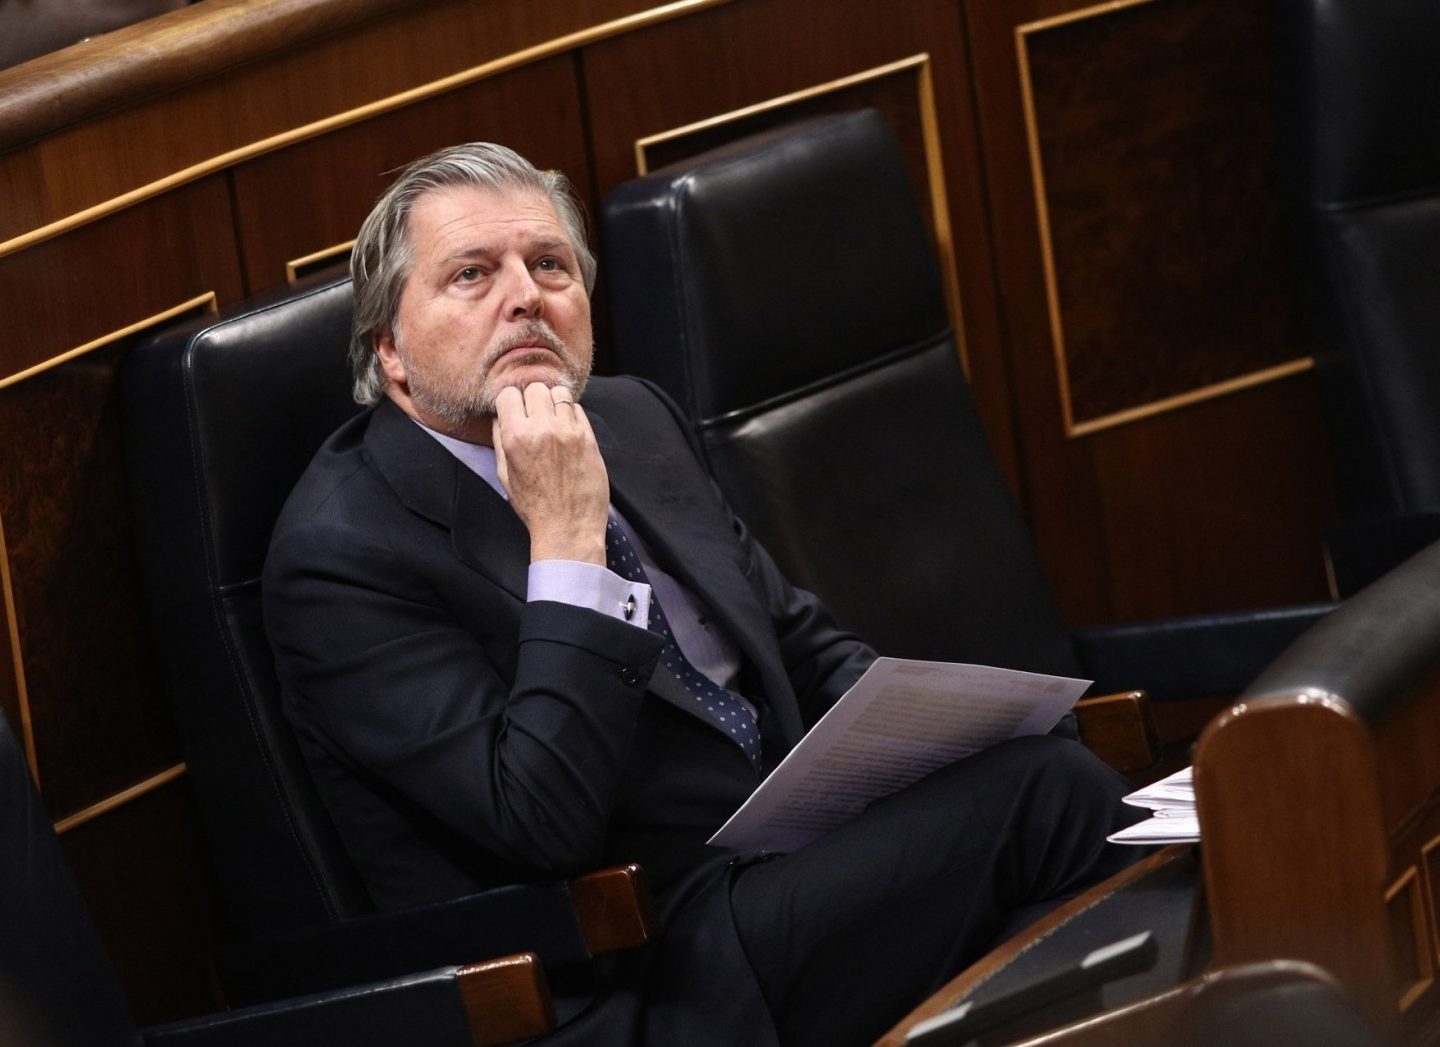 El ministro de Educación, Cultura y Deporte, Íñigo Méndez de Vigo, en su escaño del Congreso de los Diputados.